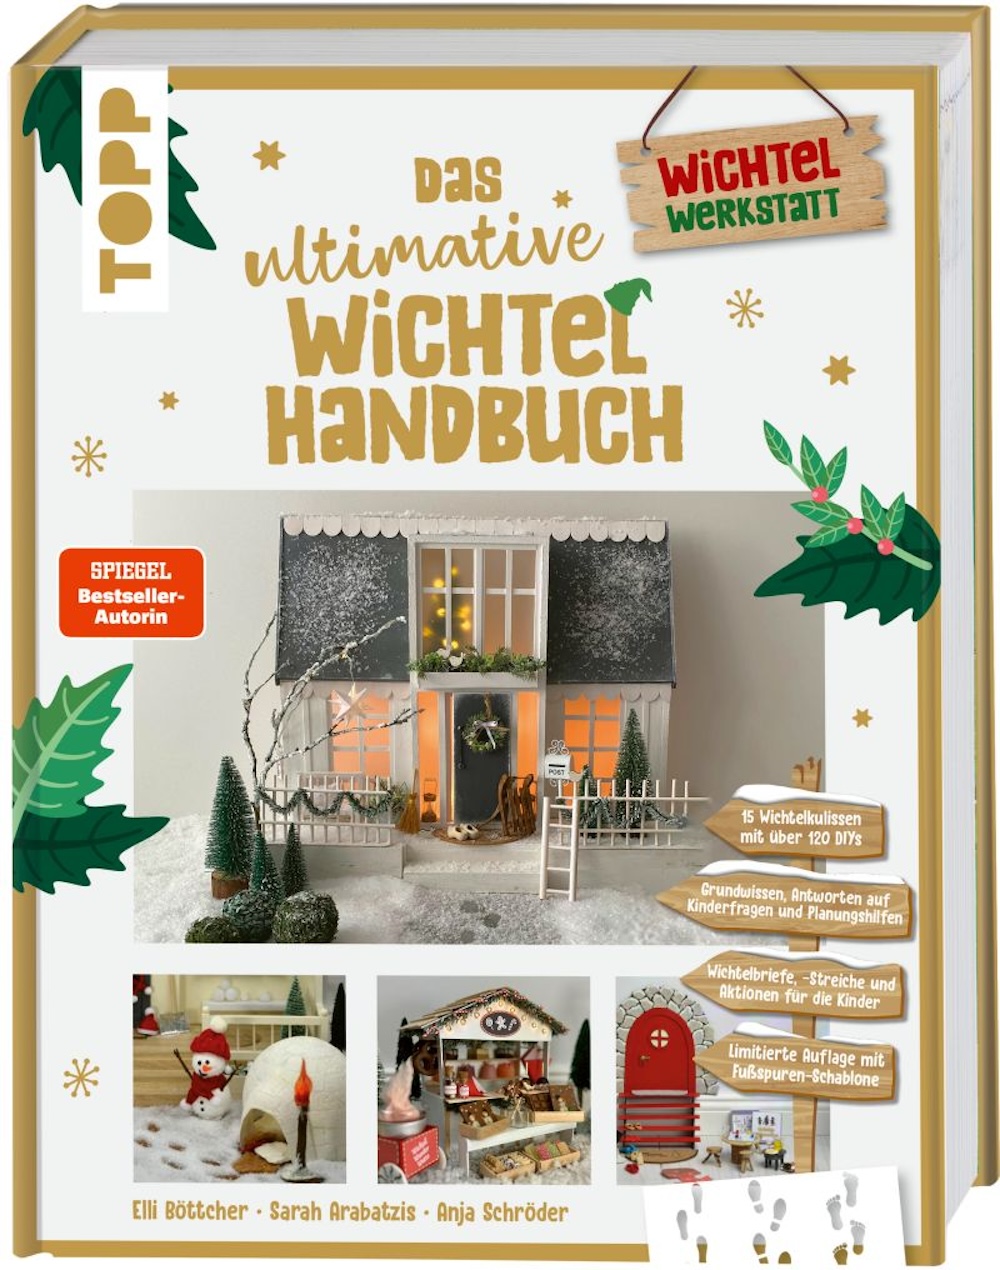 Das ultimative Wichtel Handbuch  Wichtelbriefe, Vorlagen und Bastelideen rund um die weihnachtliche Wichteltür. 256 Seiten voller DIY-Ideen! 